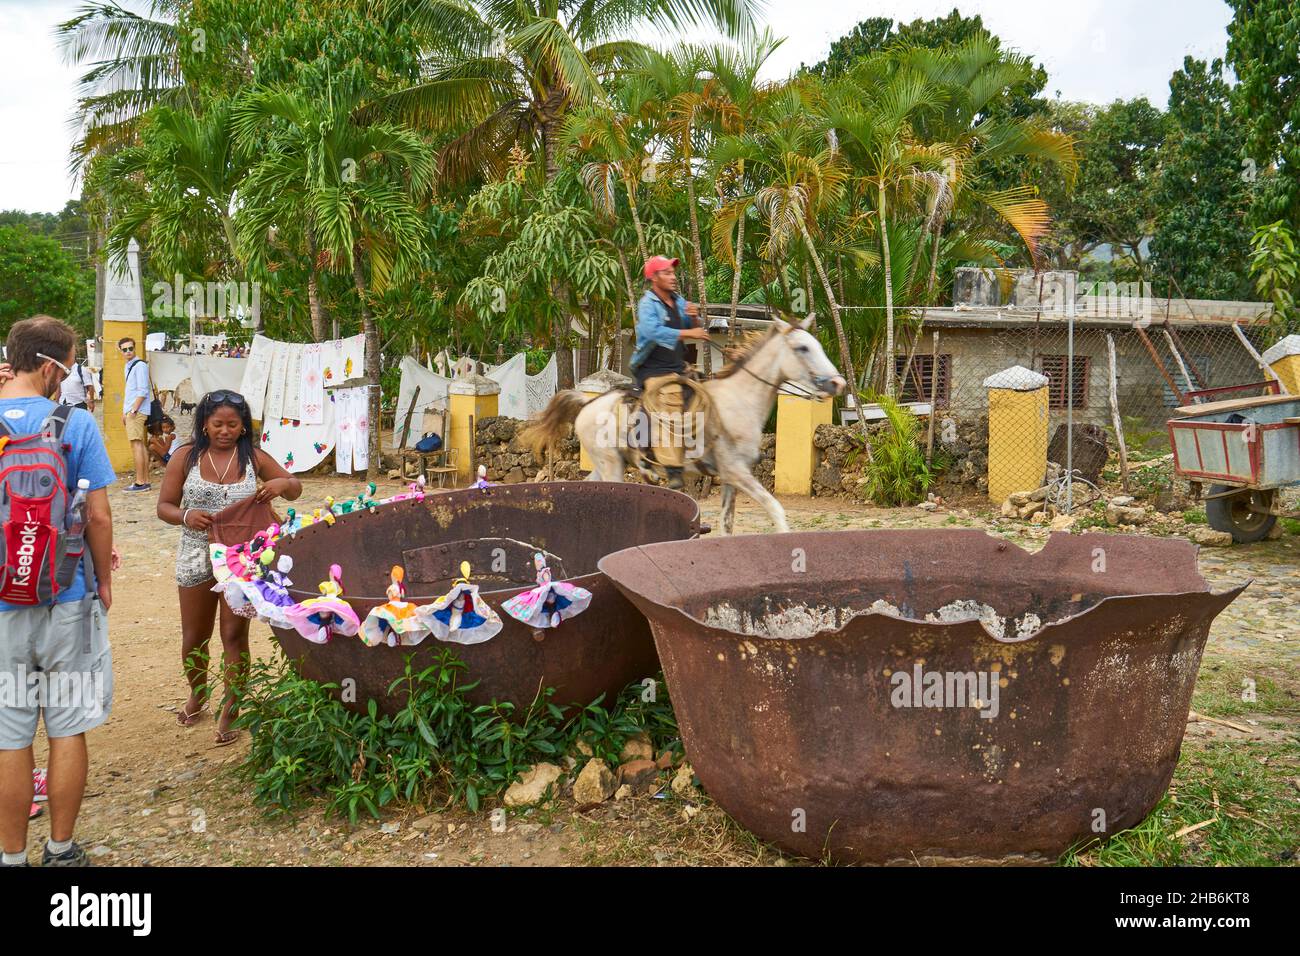 L'artigiano decora le sue bambole fatte a mano sul bordo di vecchie ciotole precedentemente usate per bollire il succo di canna da zucchero, Cuba, Valle de los Ingenios, Sancti Foto Stock